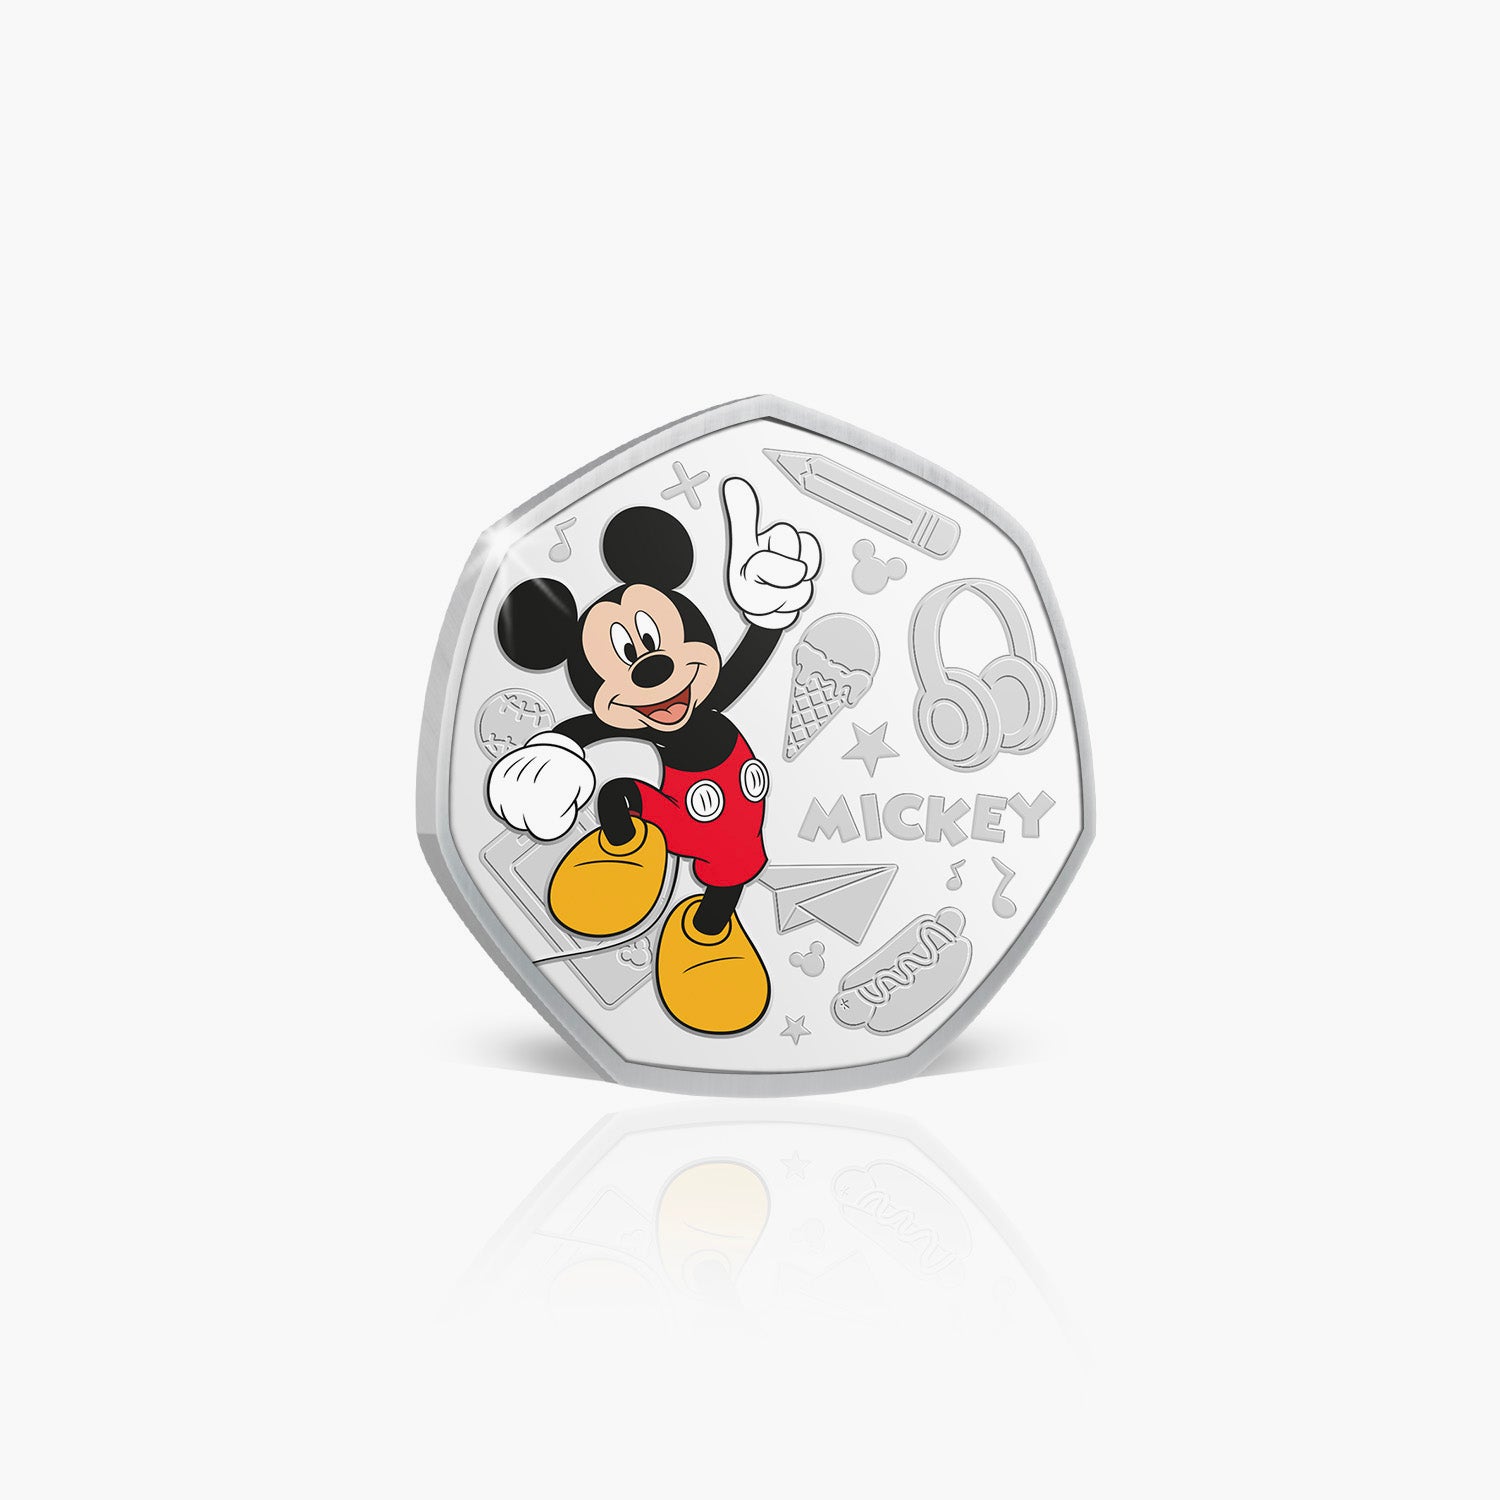 Mickey Mouse Argent Plaqué Commémoratif